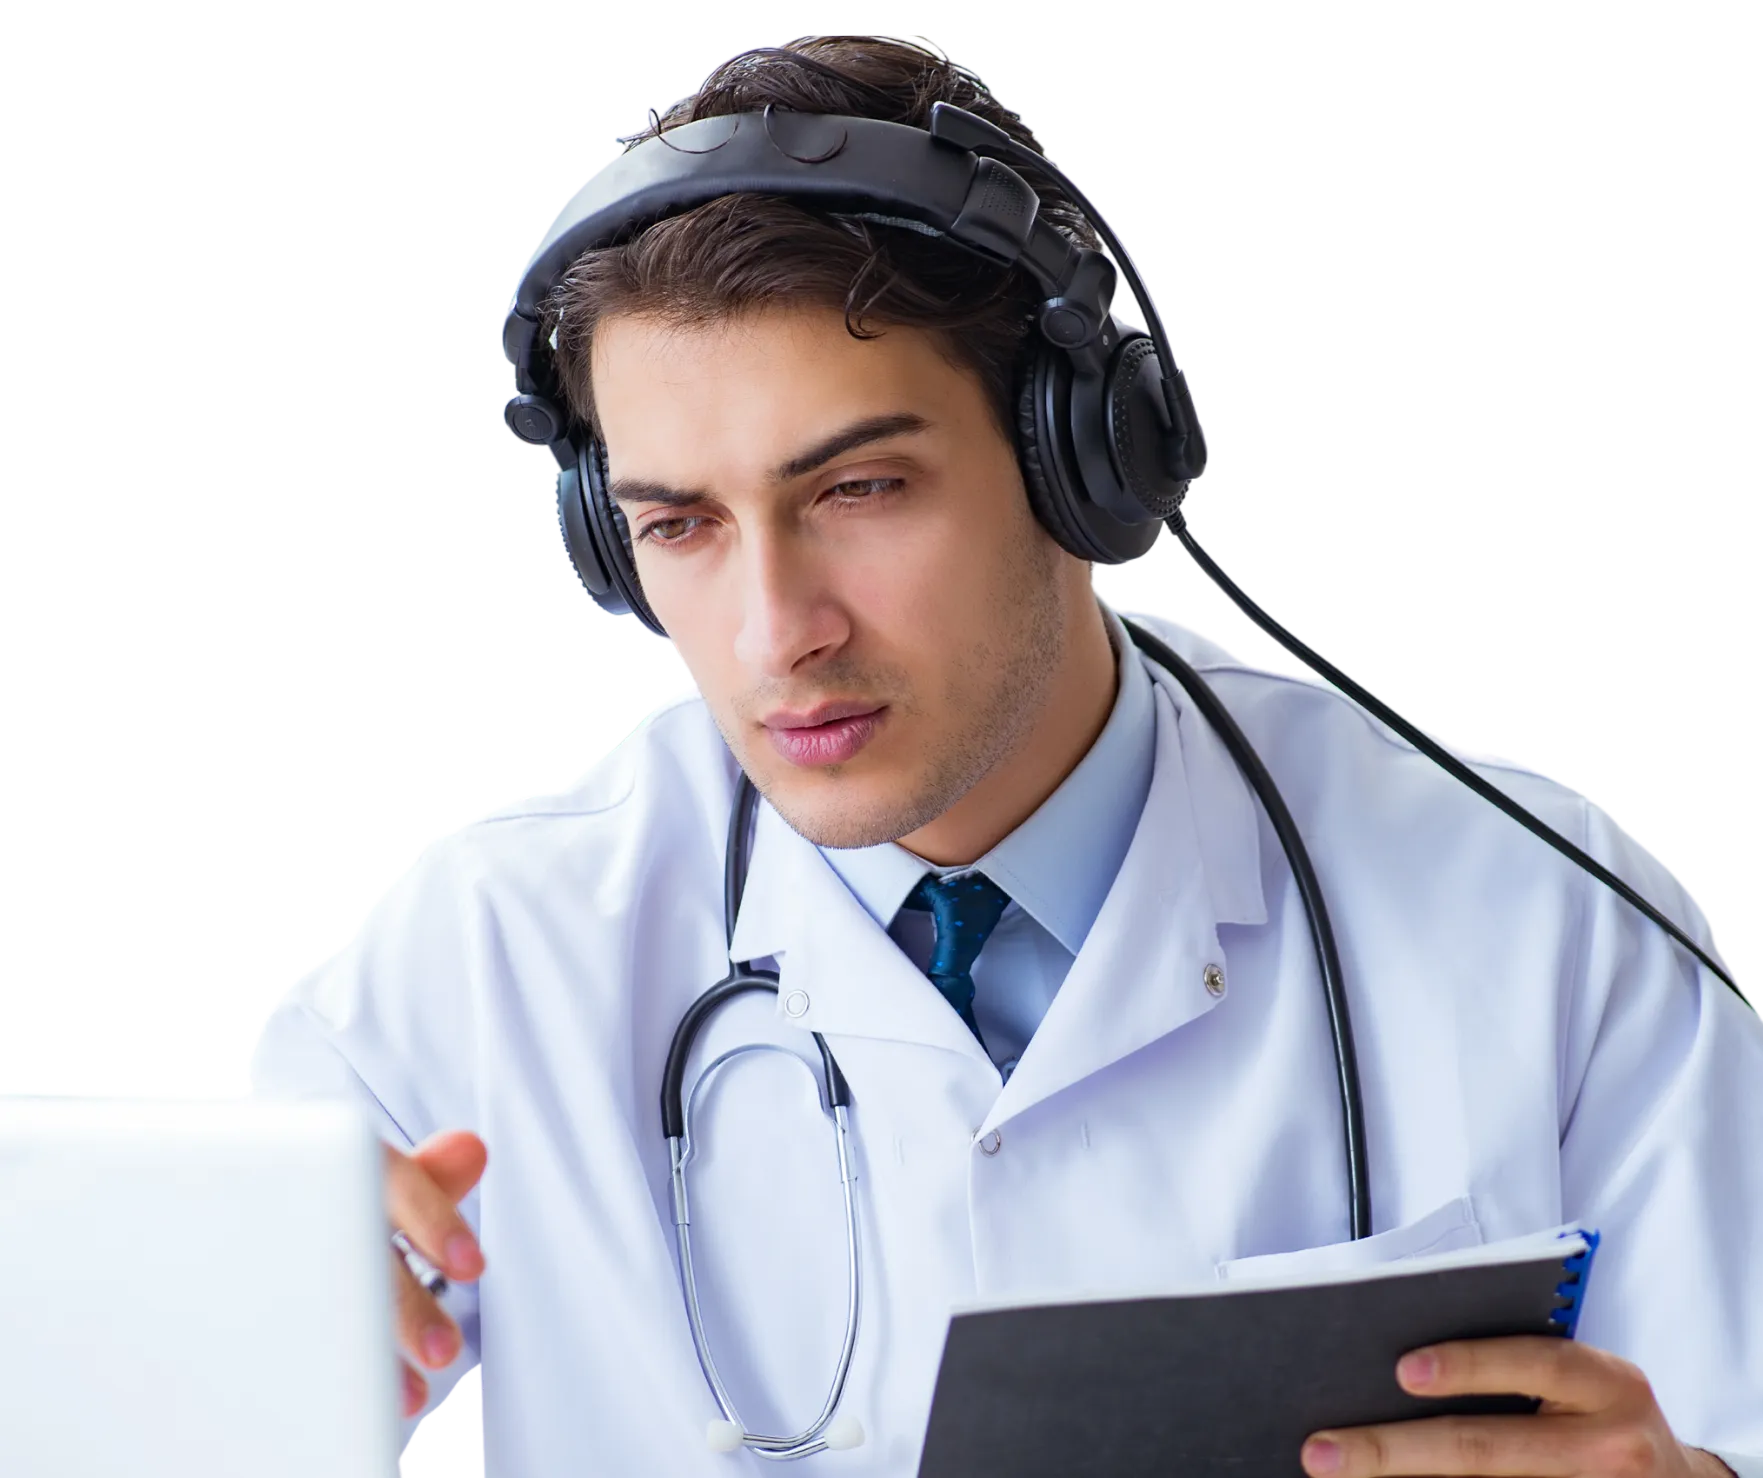 médico conversando com o paciente usando um computador, um fone de ouvido e um estetocópio